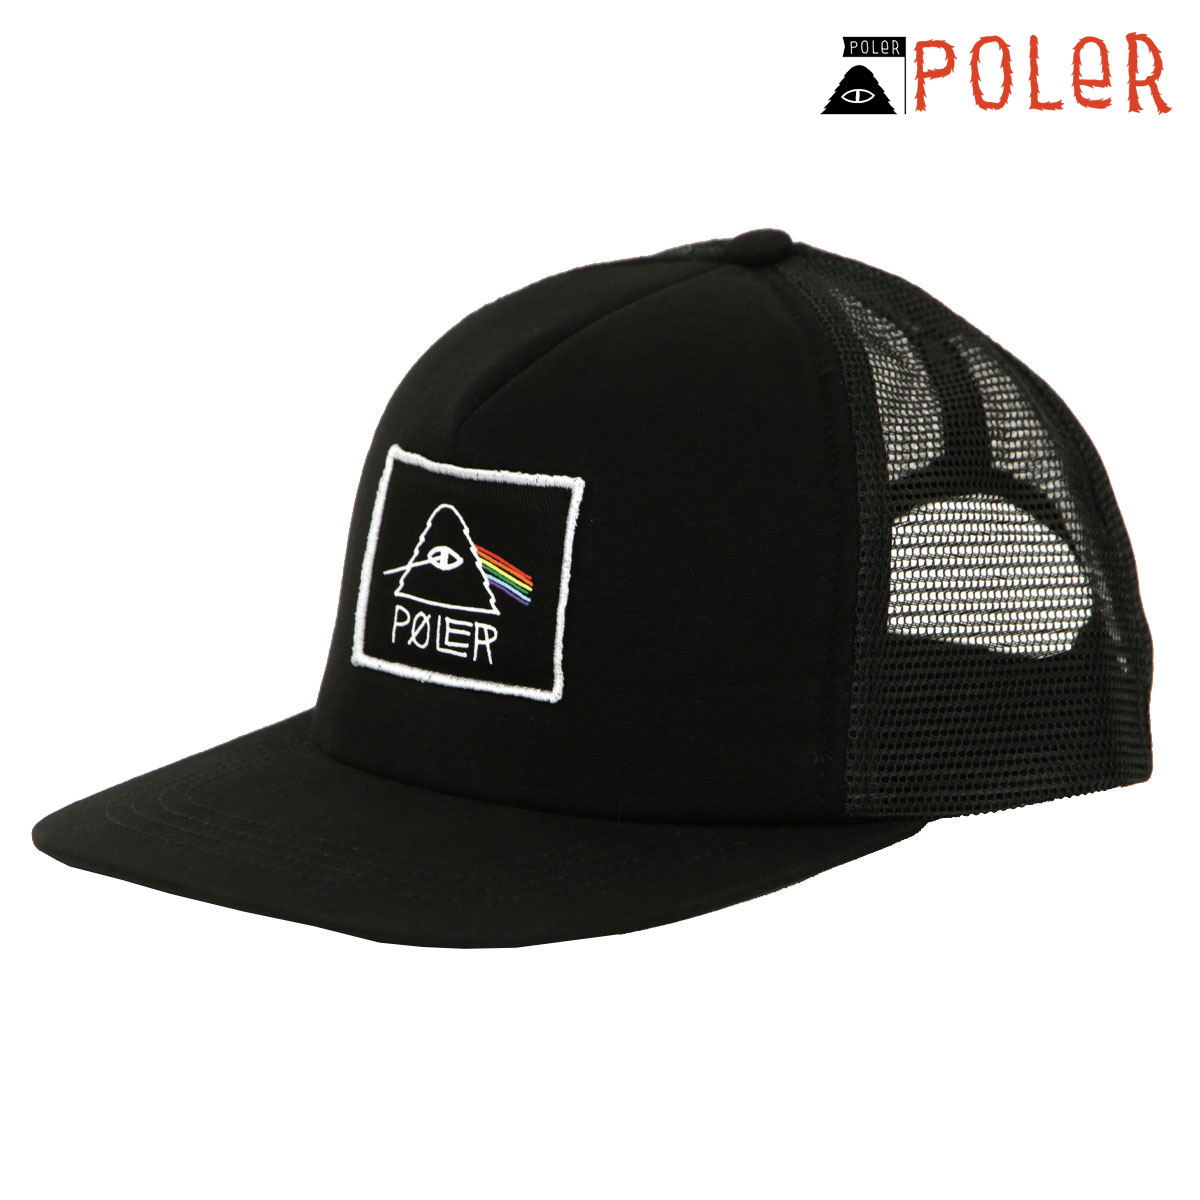 ポーラー メンズ レディース キャップ 正規販売店 POLER ロゴ 帽子 メッシュキャップ PSYCHEDELIC MESH CAP DC 241MCV0311-BLK BLACK